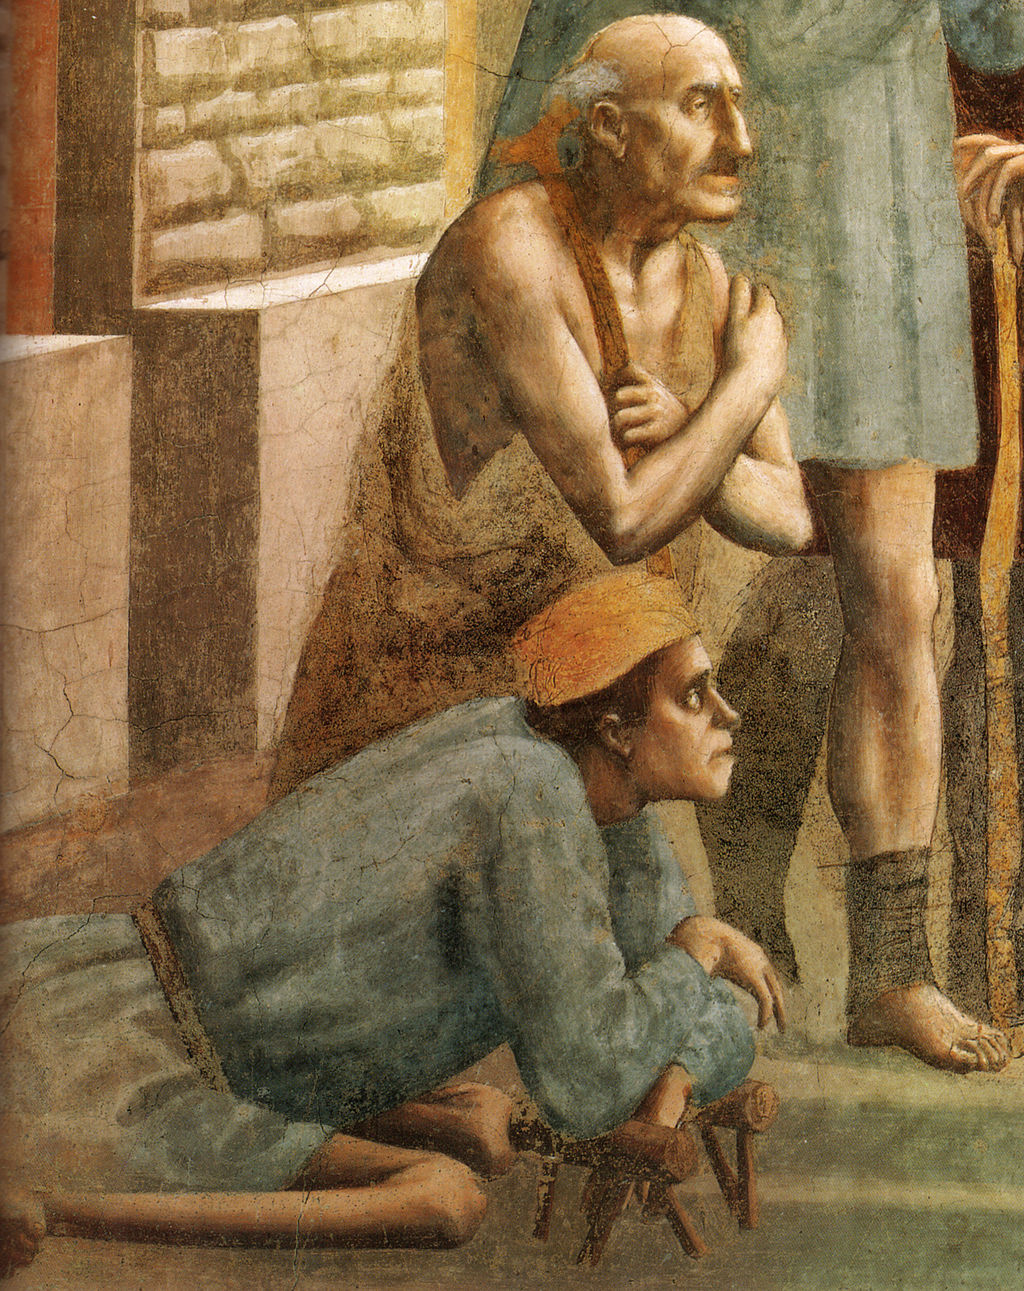 Masaccio, San Pietro risana con l’ombra (particolare degli infermi), fresco in de Cappella Brancacci, Santa Maria del Carmine, Firenze